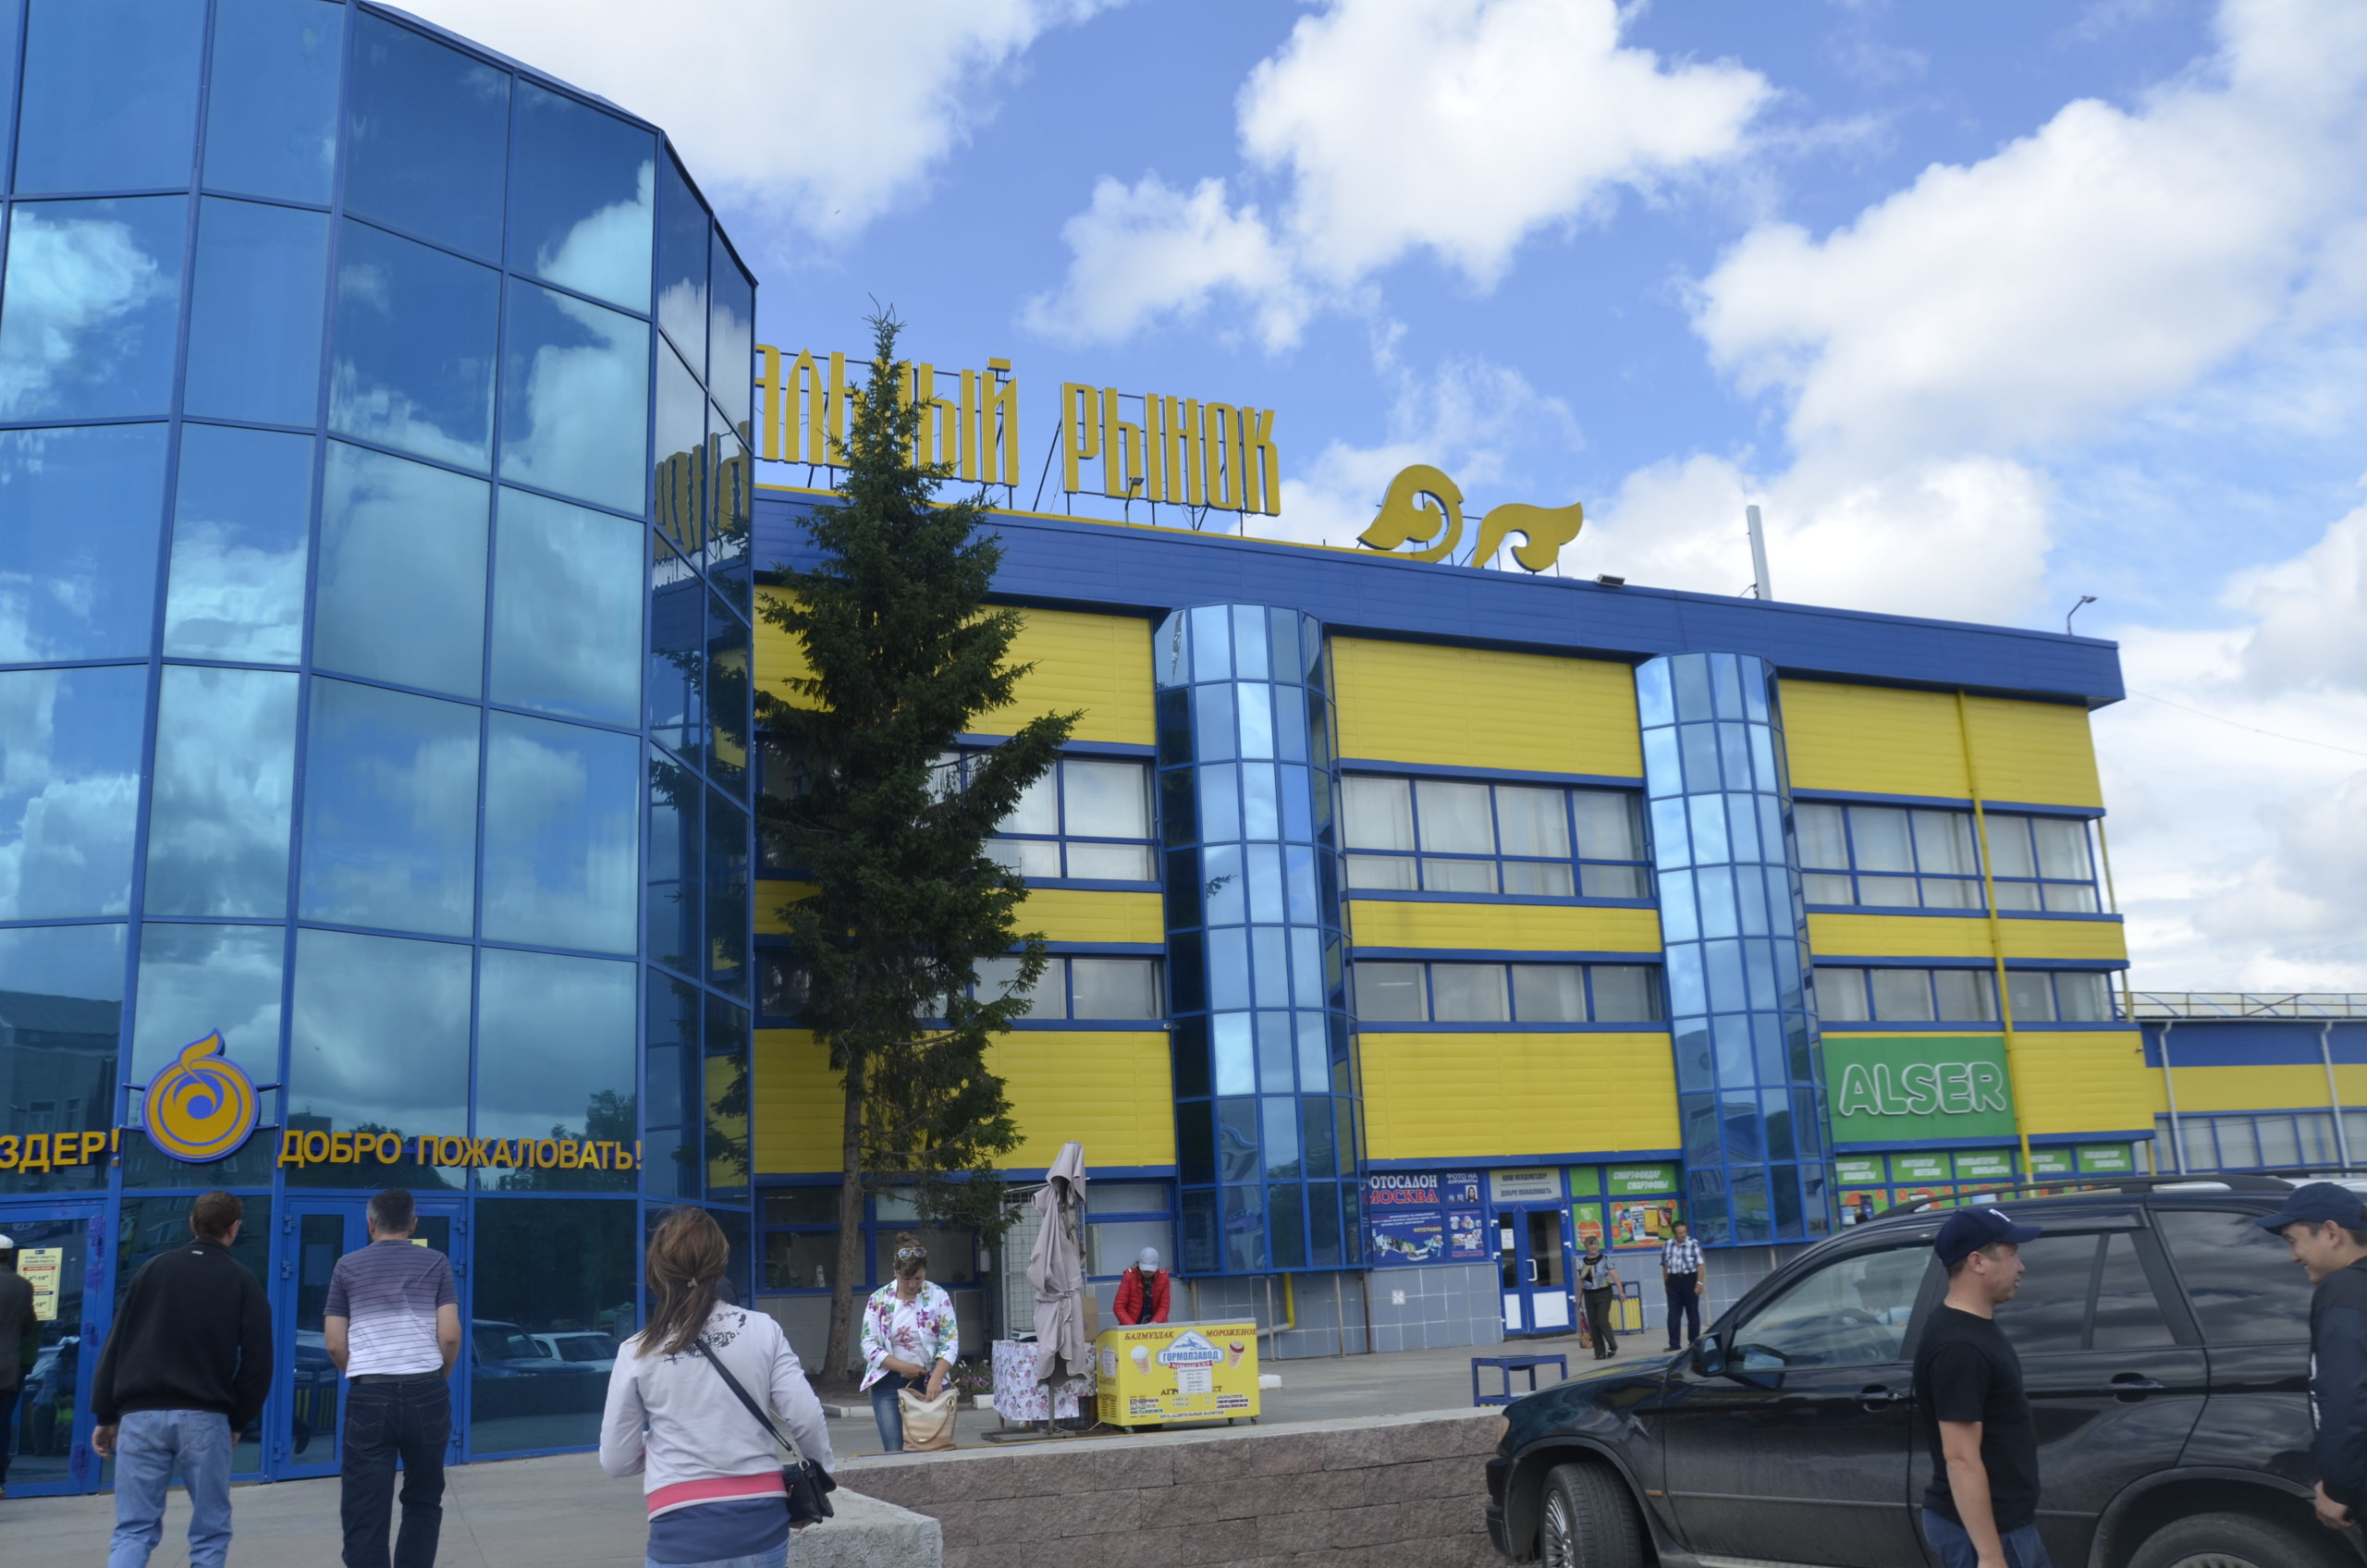 Орталык Базар или Центральный рынок Кокшетау пользуется большой популярностью у покупателей Акмолинского района Казахстана